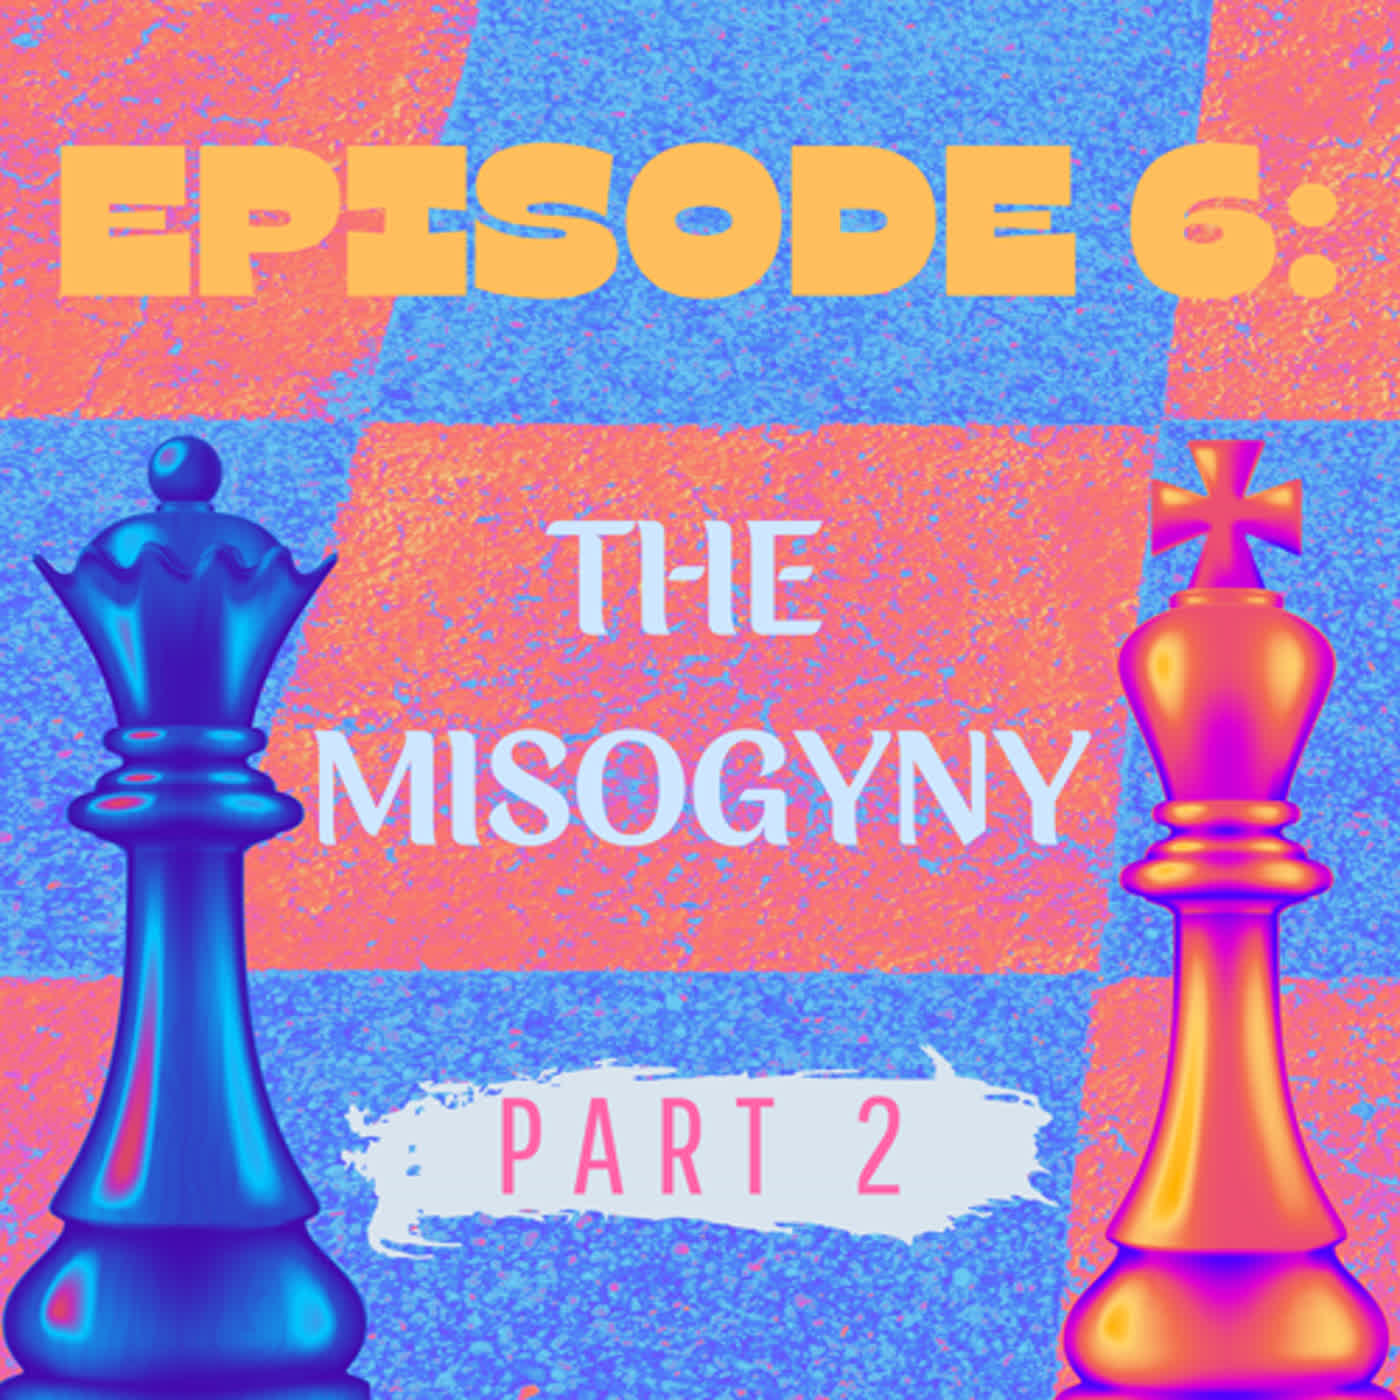 Episode 6: The Misogyny - A More Inclusive Future (Part 2)